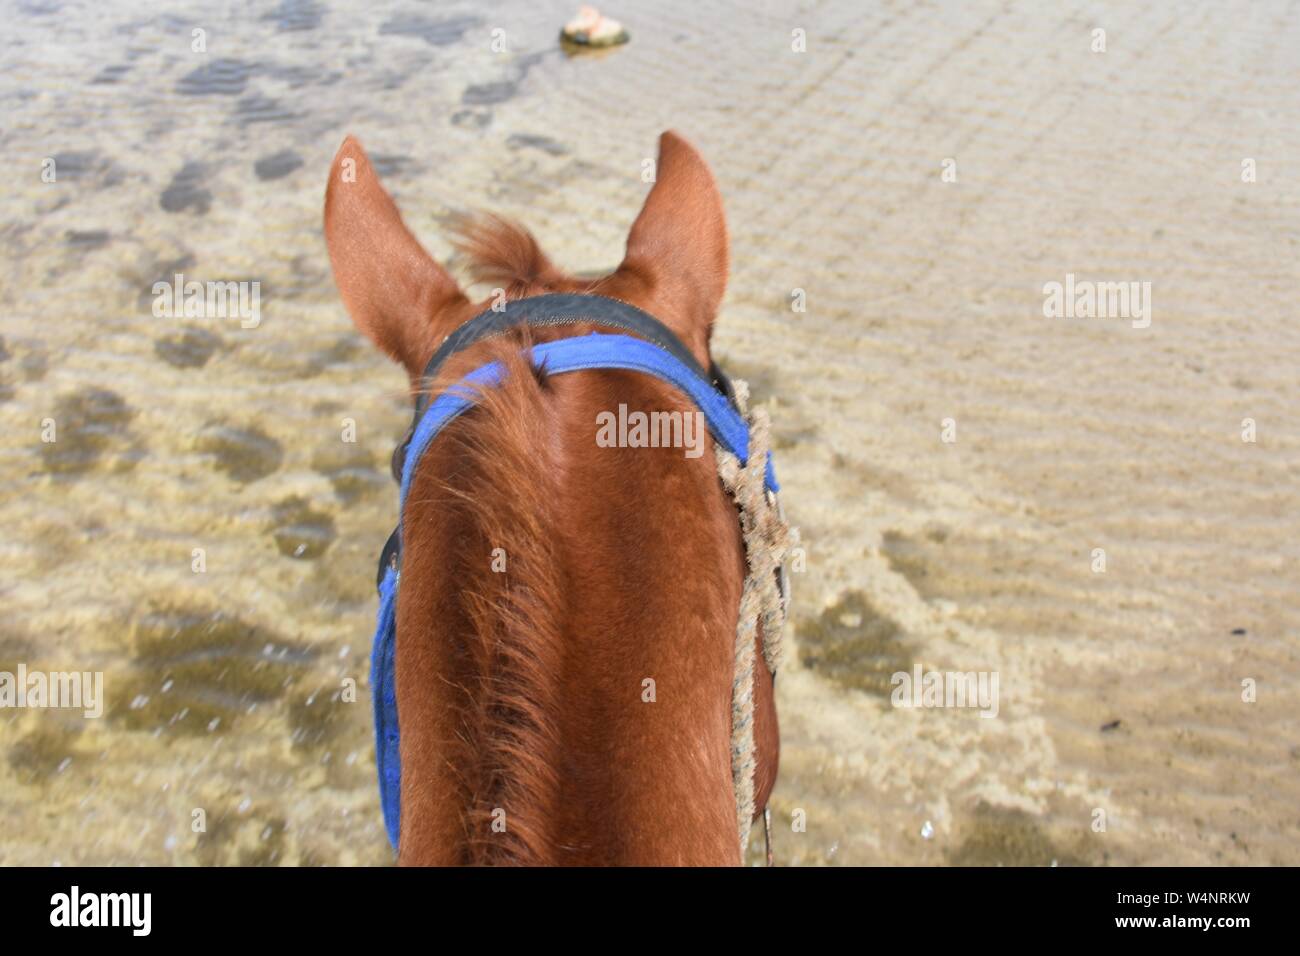 Equitazione sulla sommità del cavallo in acqua poco profonda Foto Stock